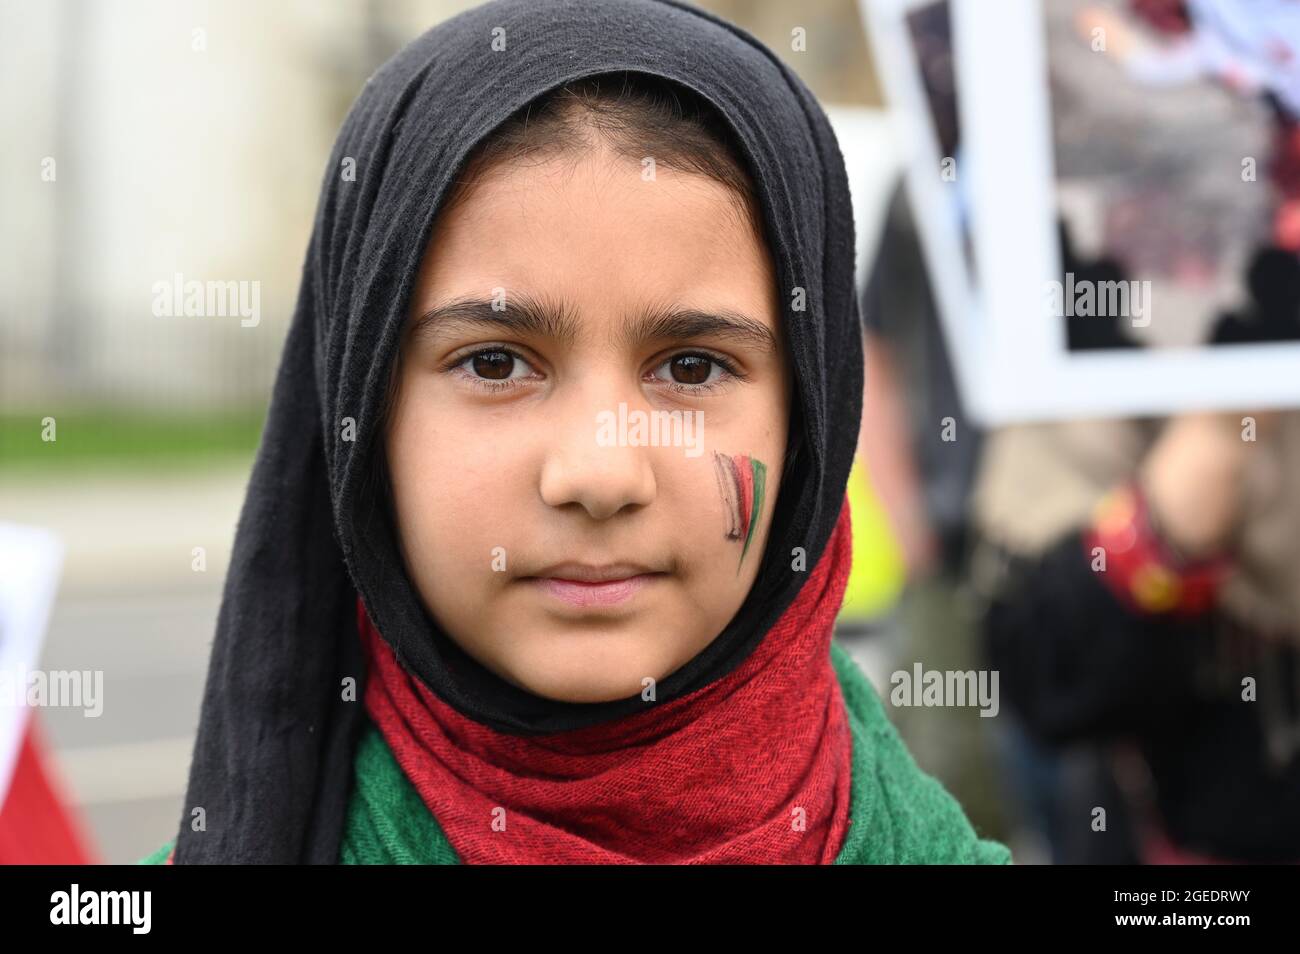 Une fille afghane au visage peint drapeau de l'Afghanistan sur sa joue, manifestation en Afghanistan, place du Parlement, Westminster, Londres. ROYAUME-UNI Banque D'Images